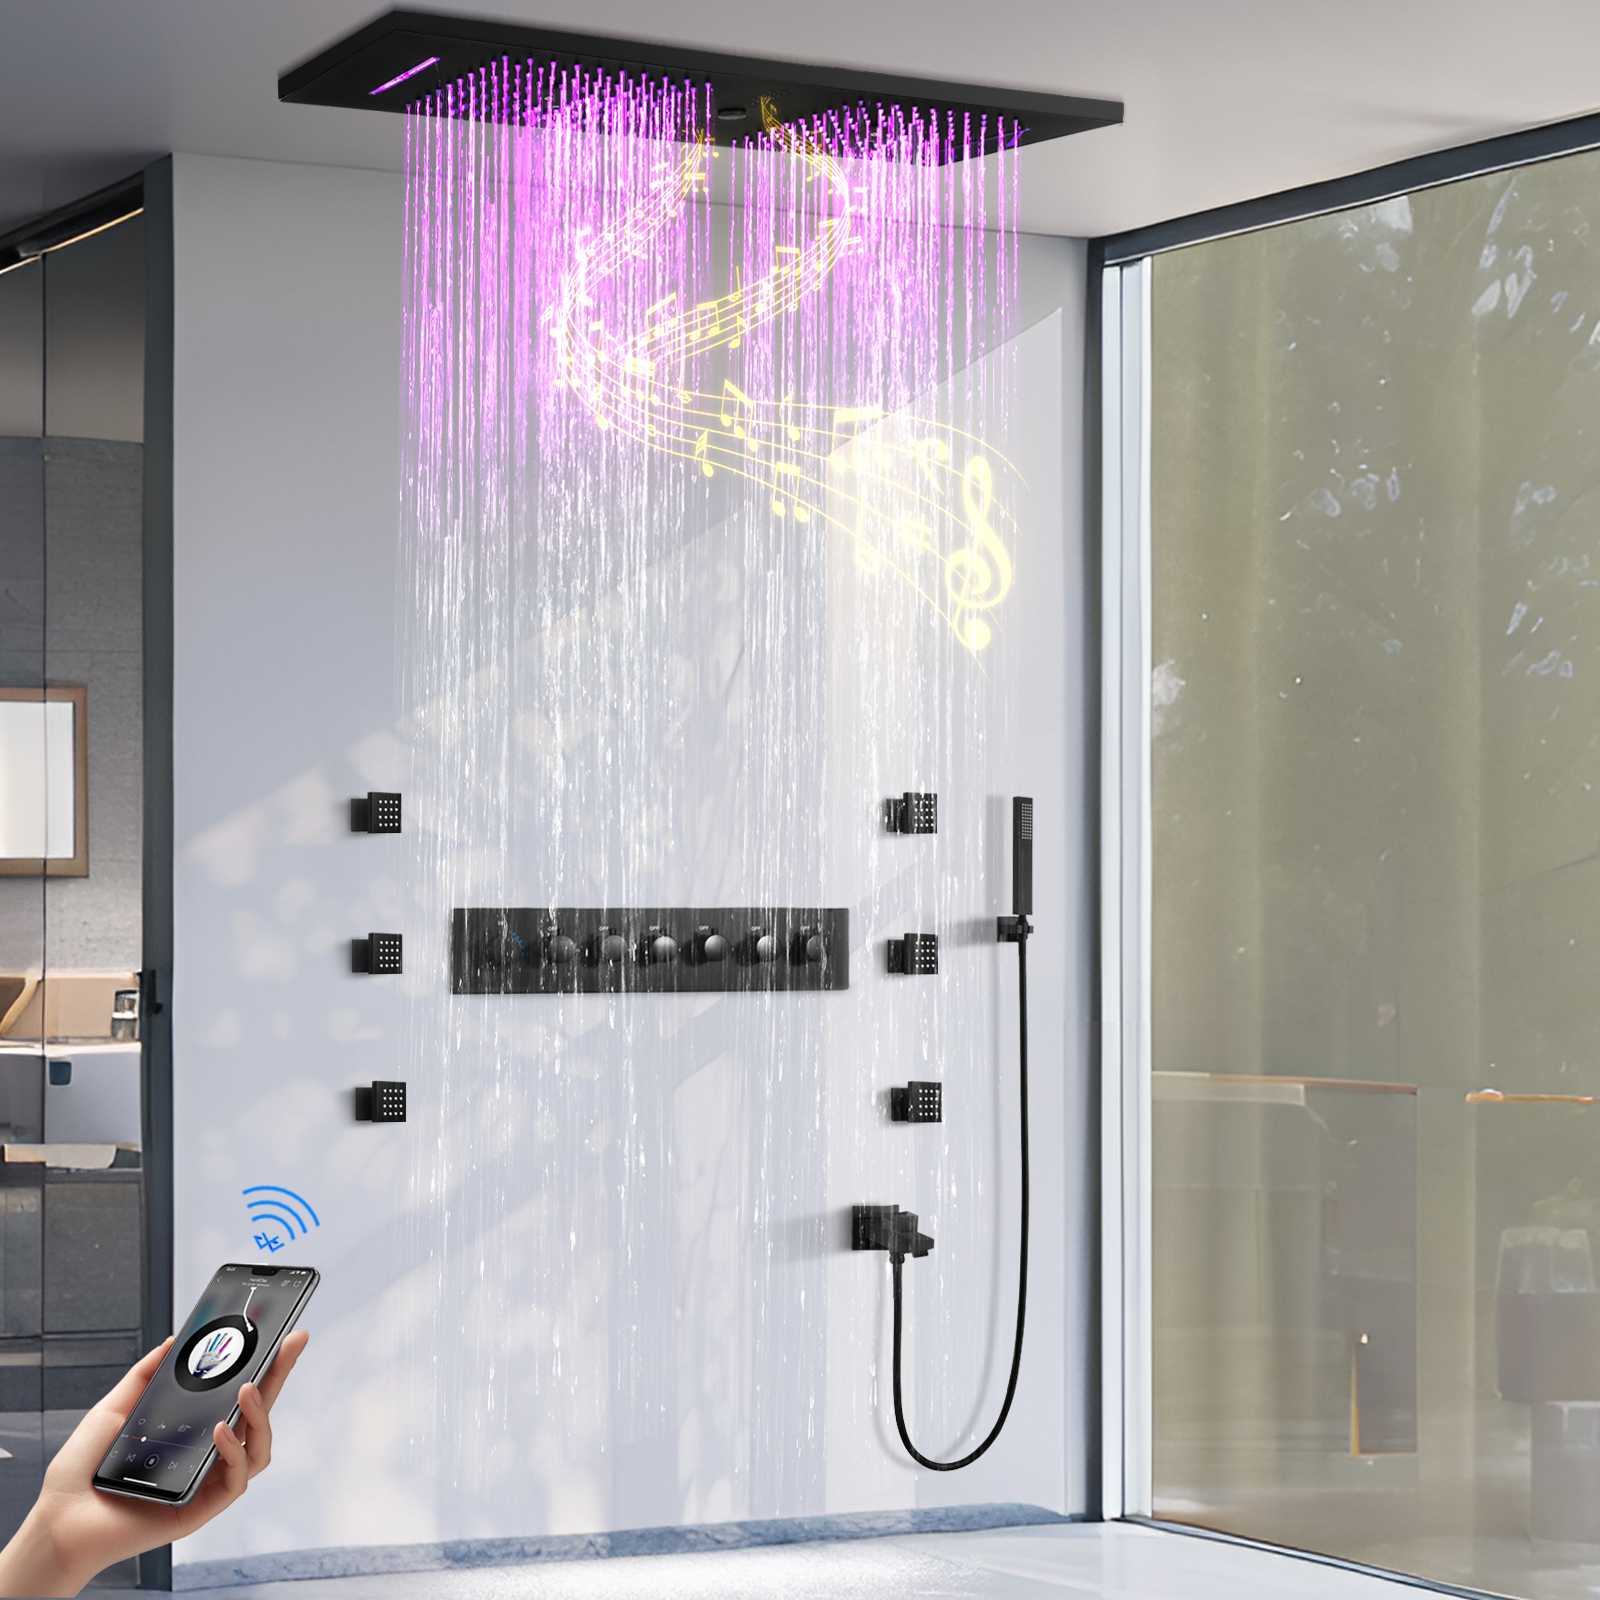 الحمام شلال الأمطار LED درجة حرارة ثابتة دش صنبور الماء مع دش طائرة ودش وظيفة الموسيقى